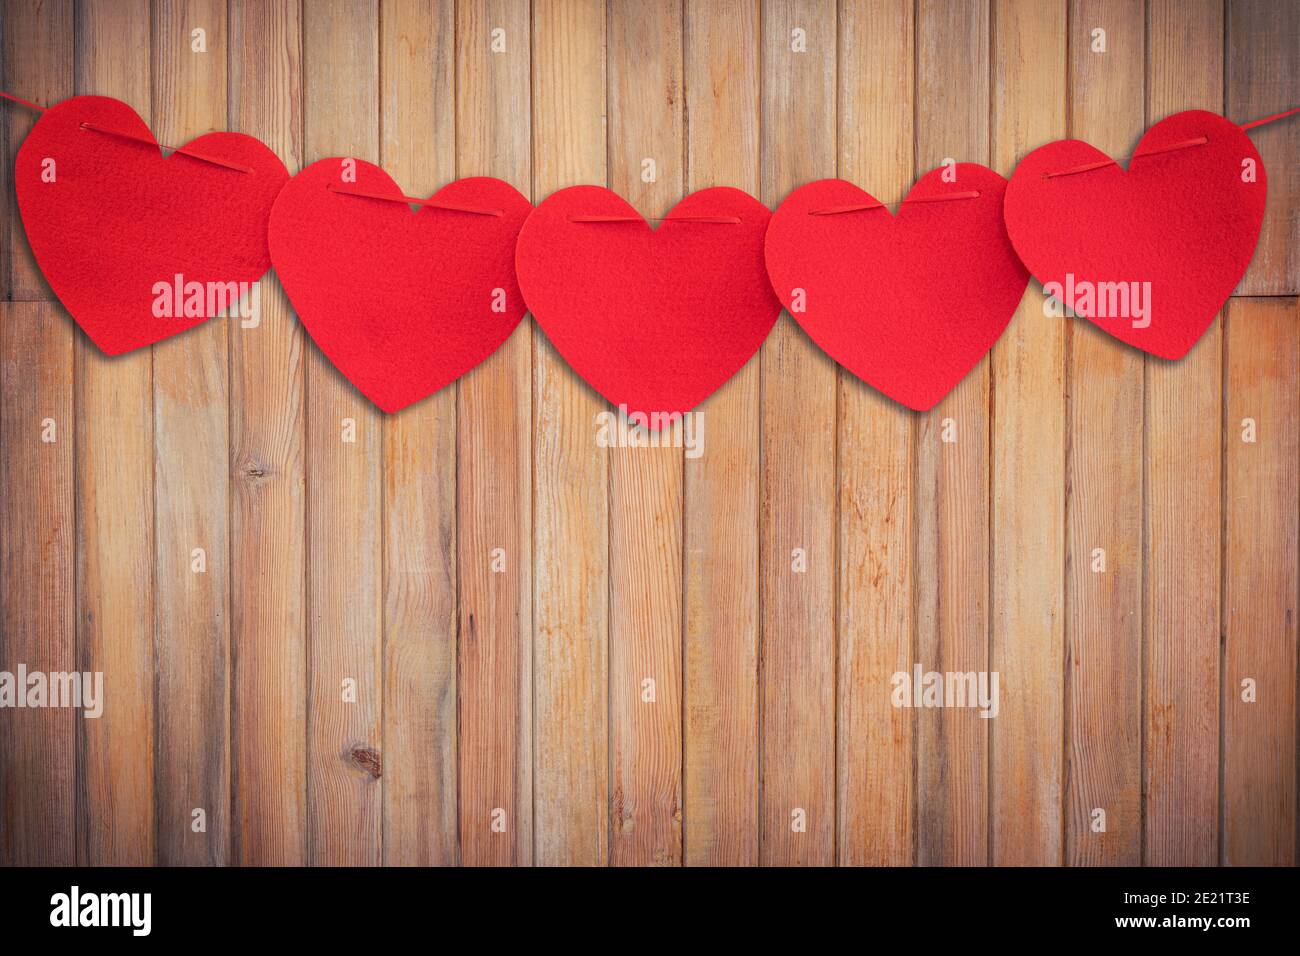 Rotes Herz hängt auf Holz Hintergrund und Textur vertikal. Stockfoto